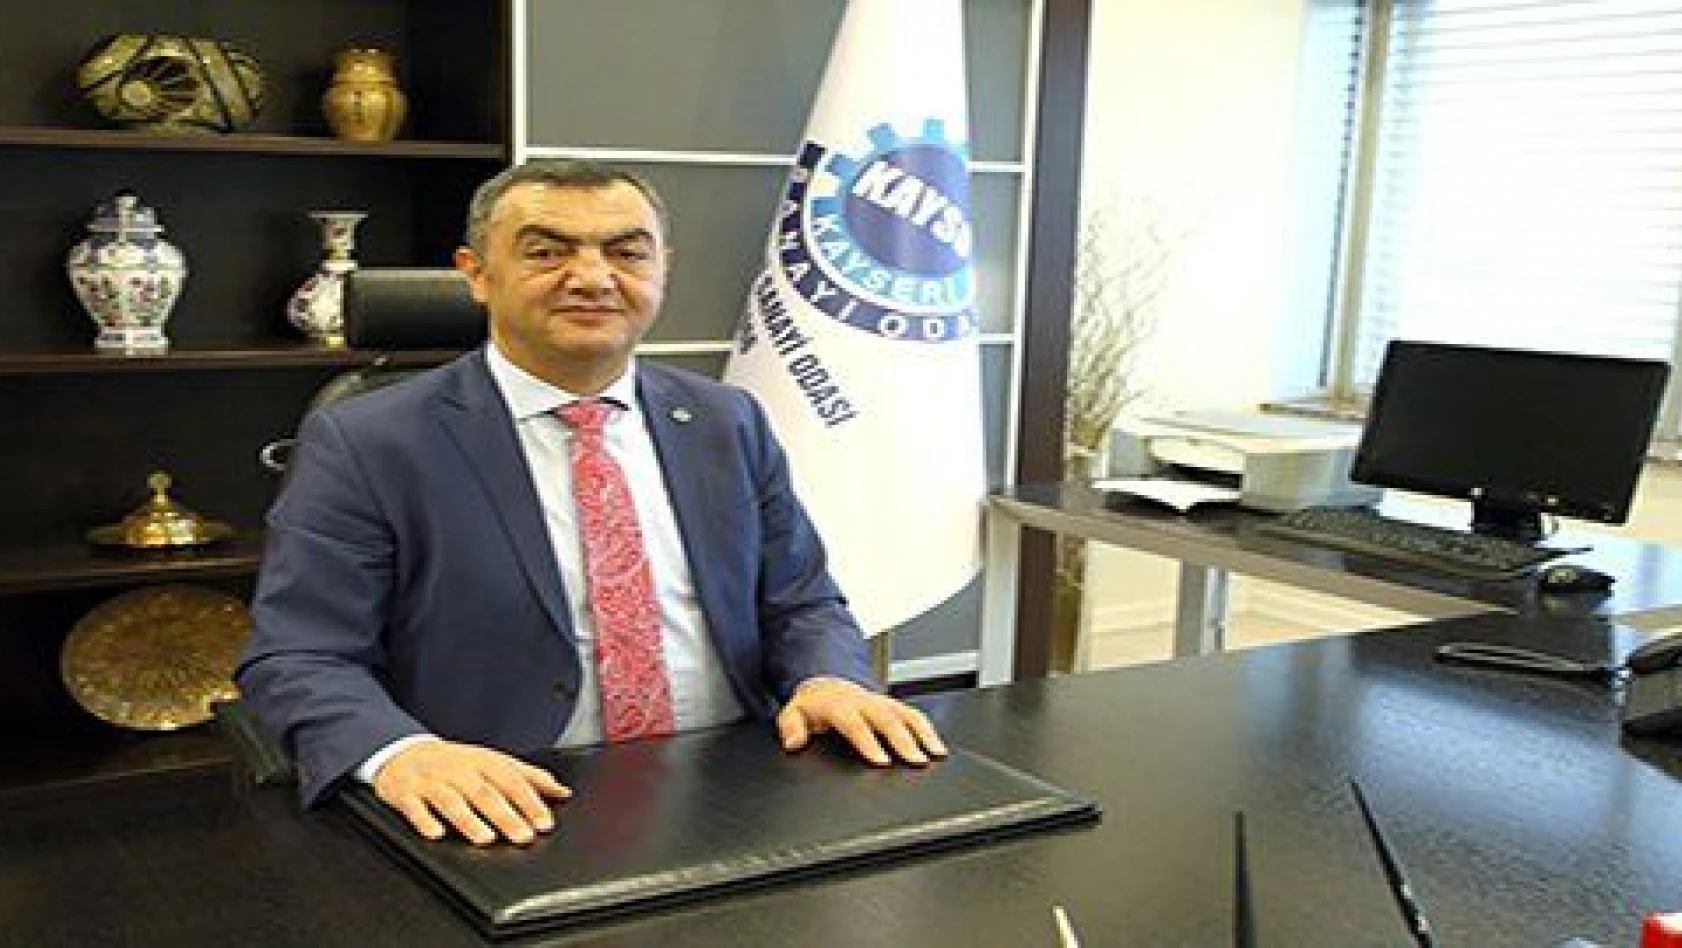 Kayseri'de ar-ge merkezlerinin sayısı artmaya devam ediyor 